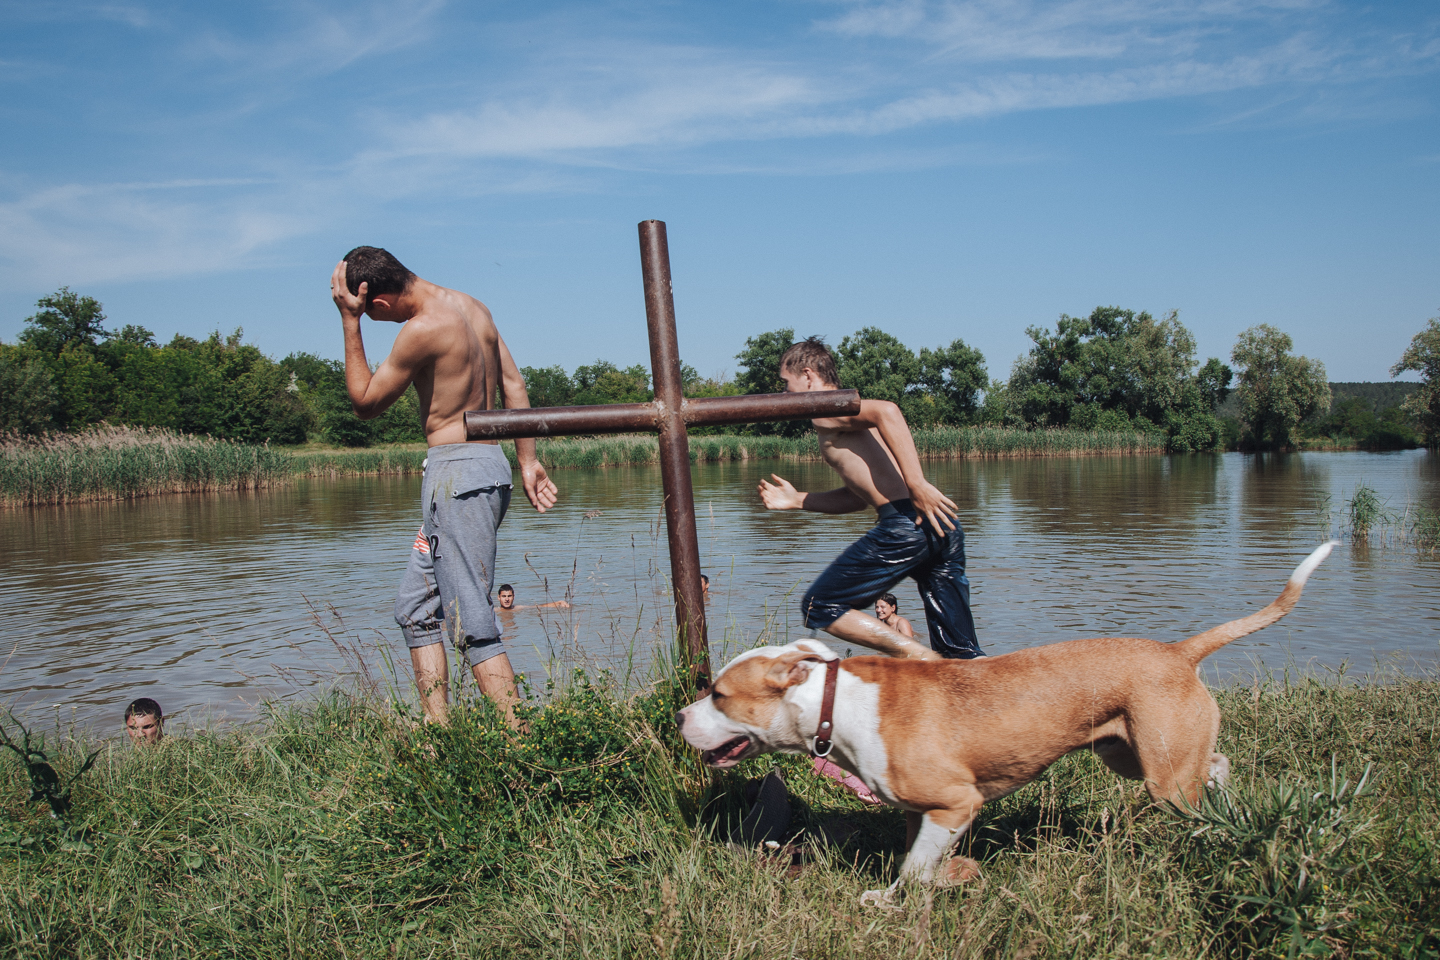 Село Хрустовая. Купание в озере — одно из любимых развлечений молодежи в селе